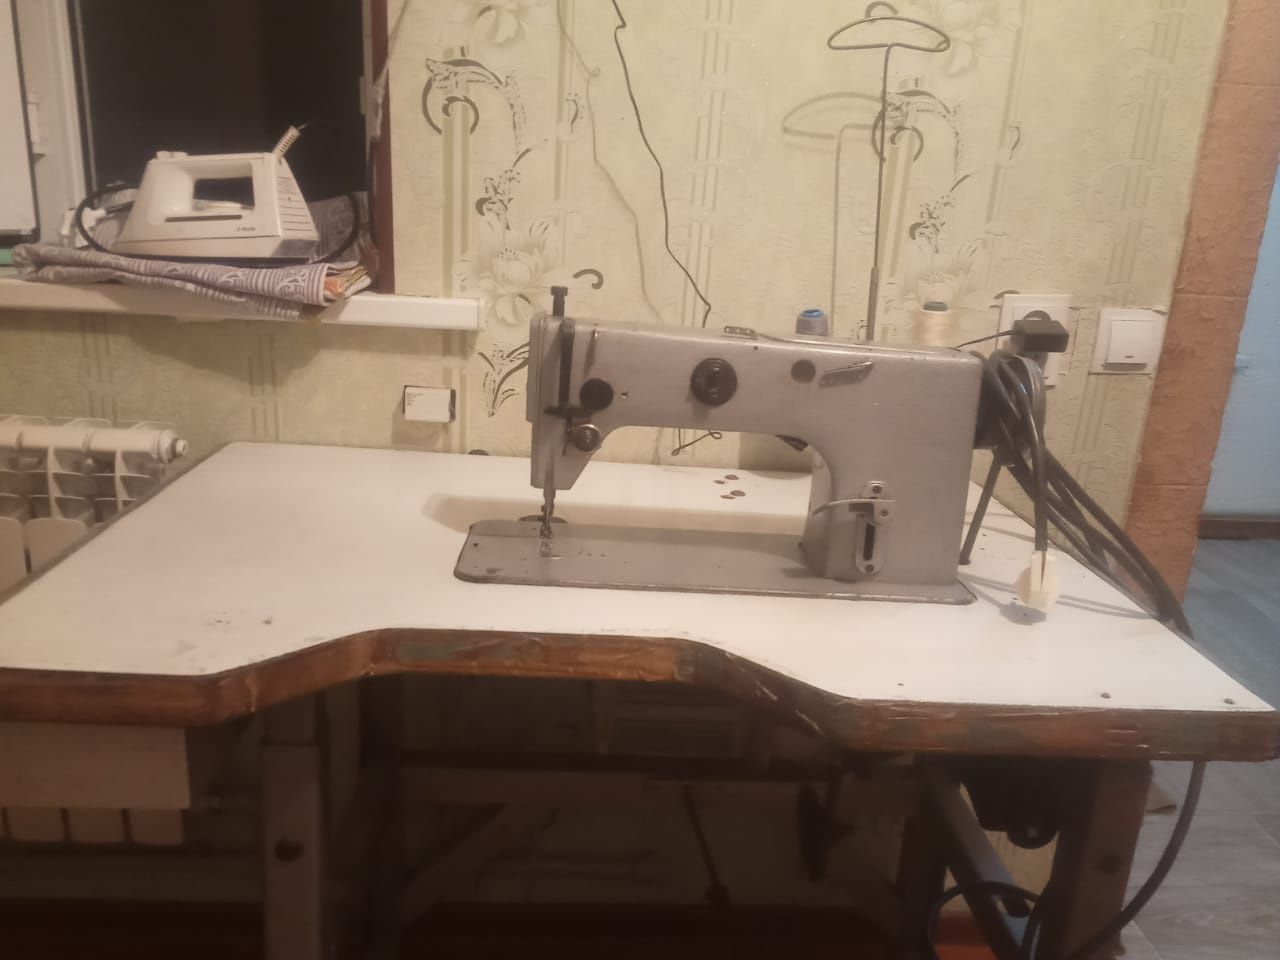 Швейная машинка электрическая